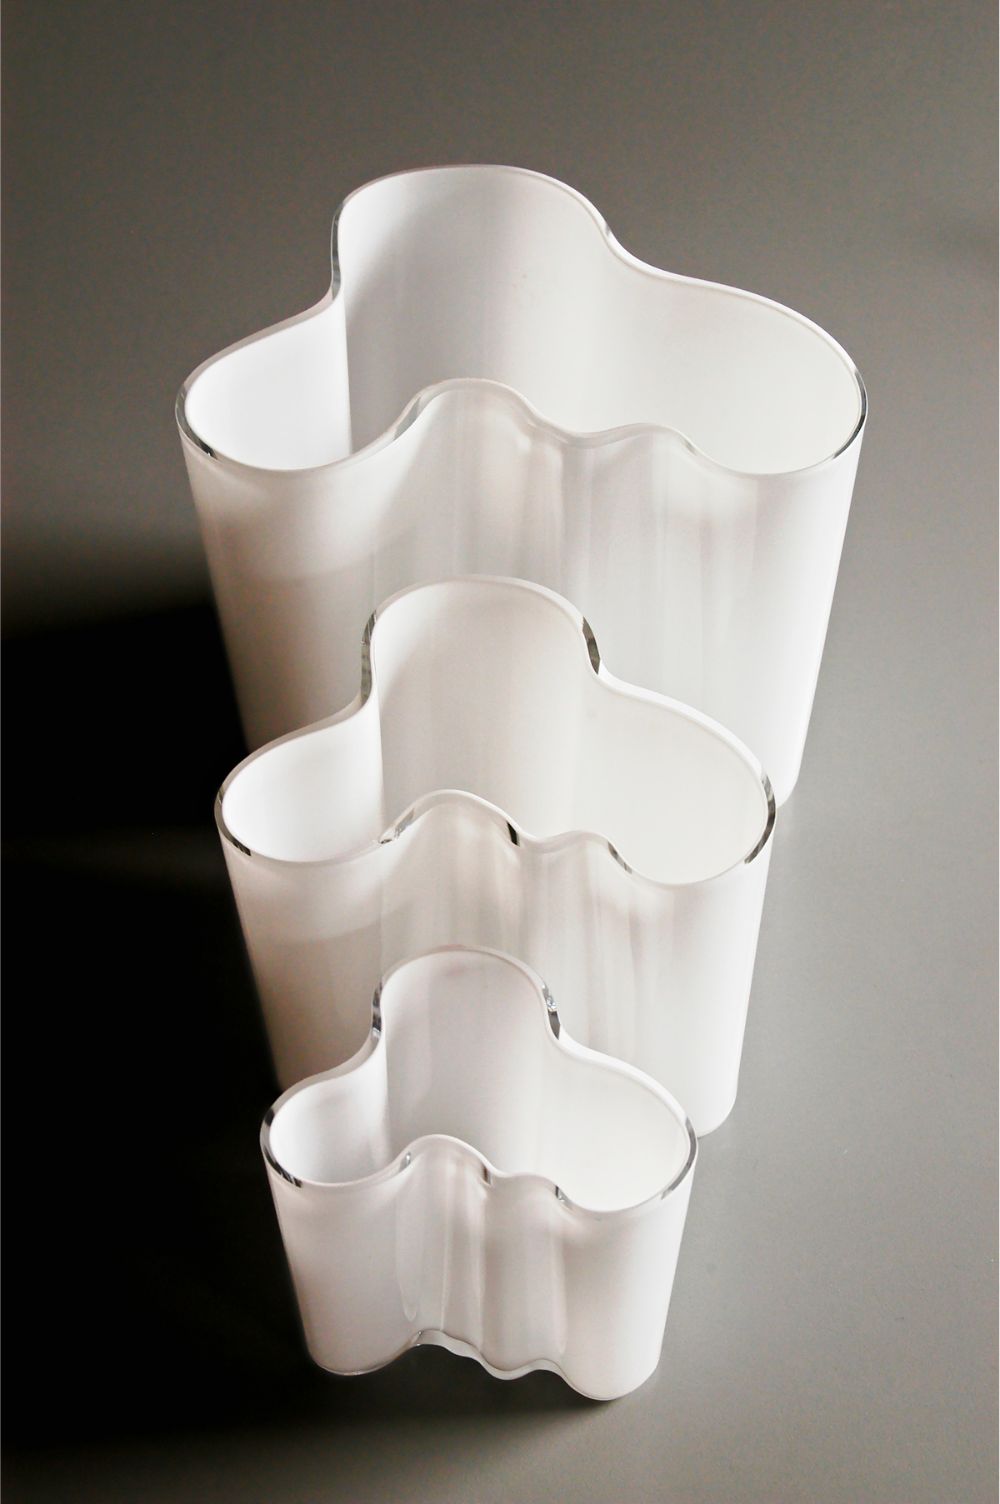 The iconic Aalto vase design. Photo: Peter Helge Petersen / Shutterstock.com.